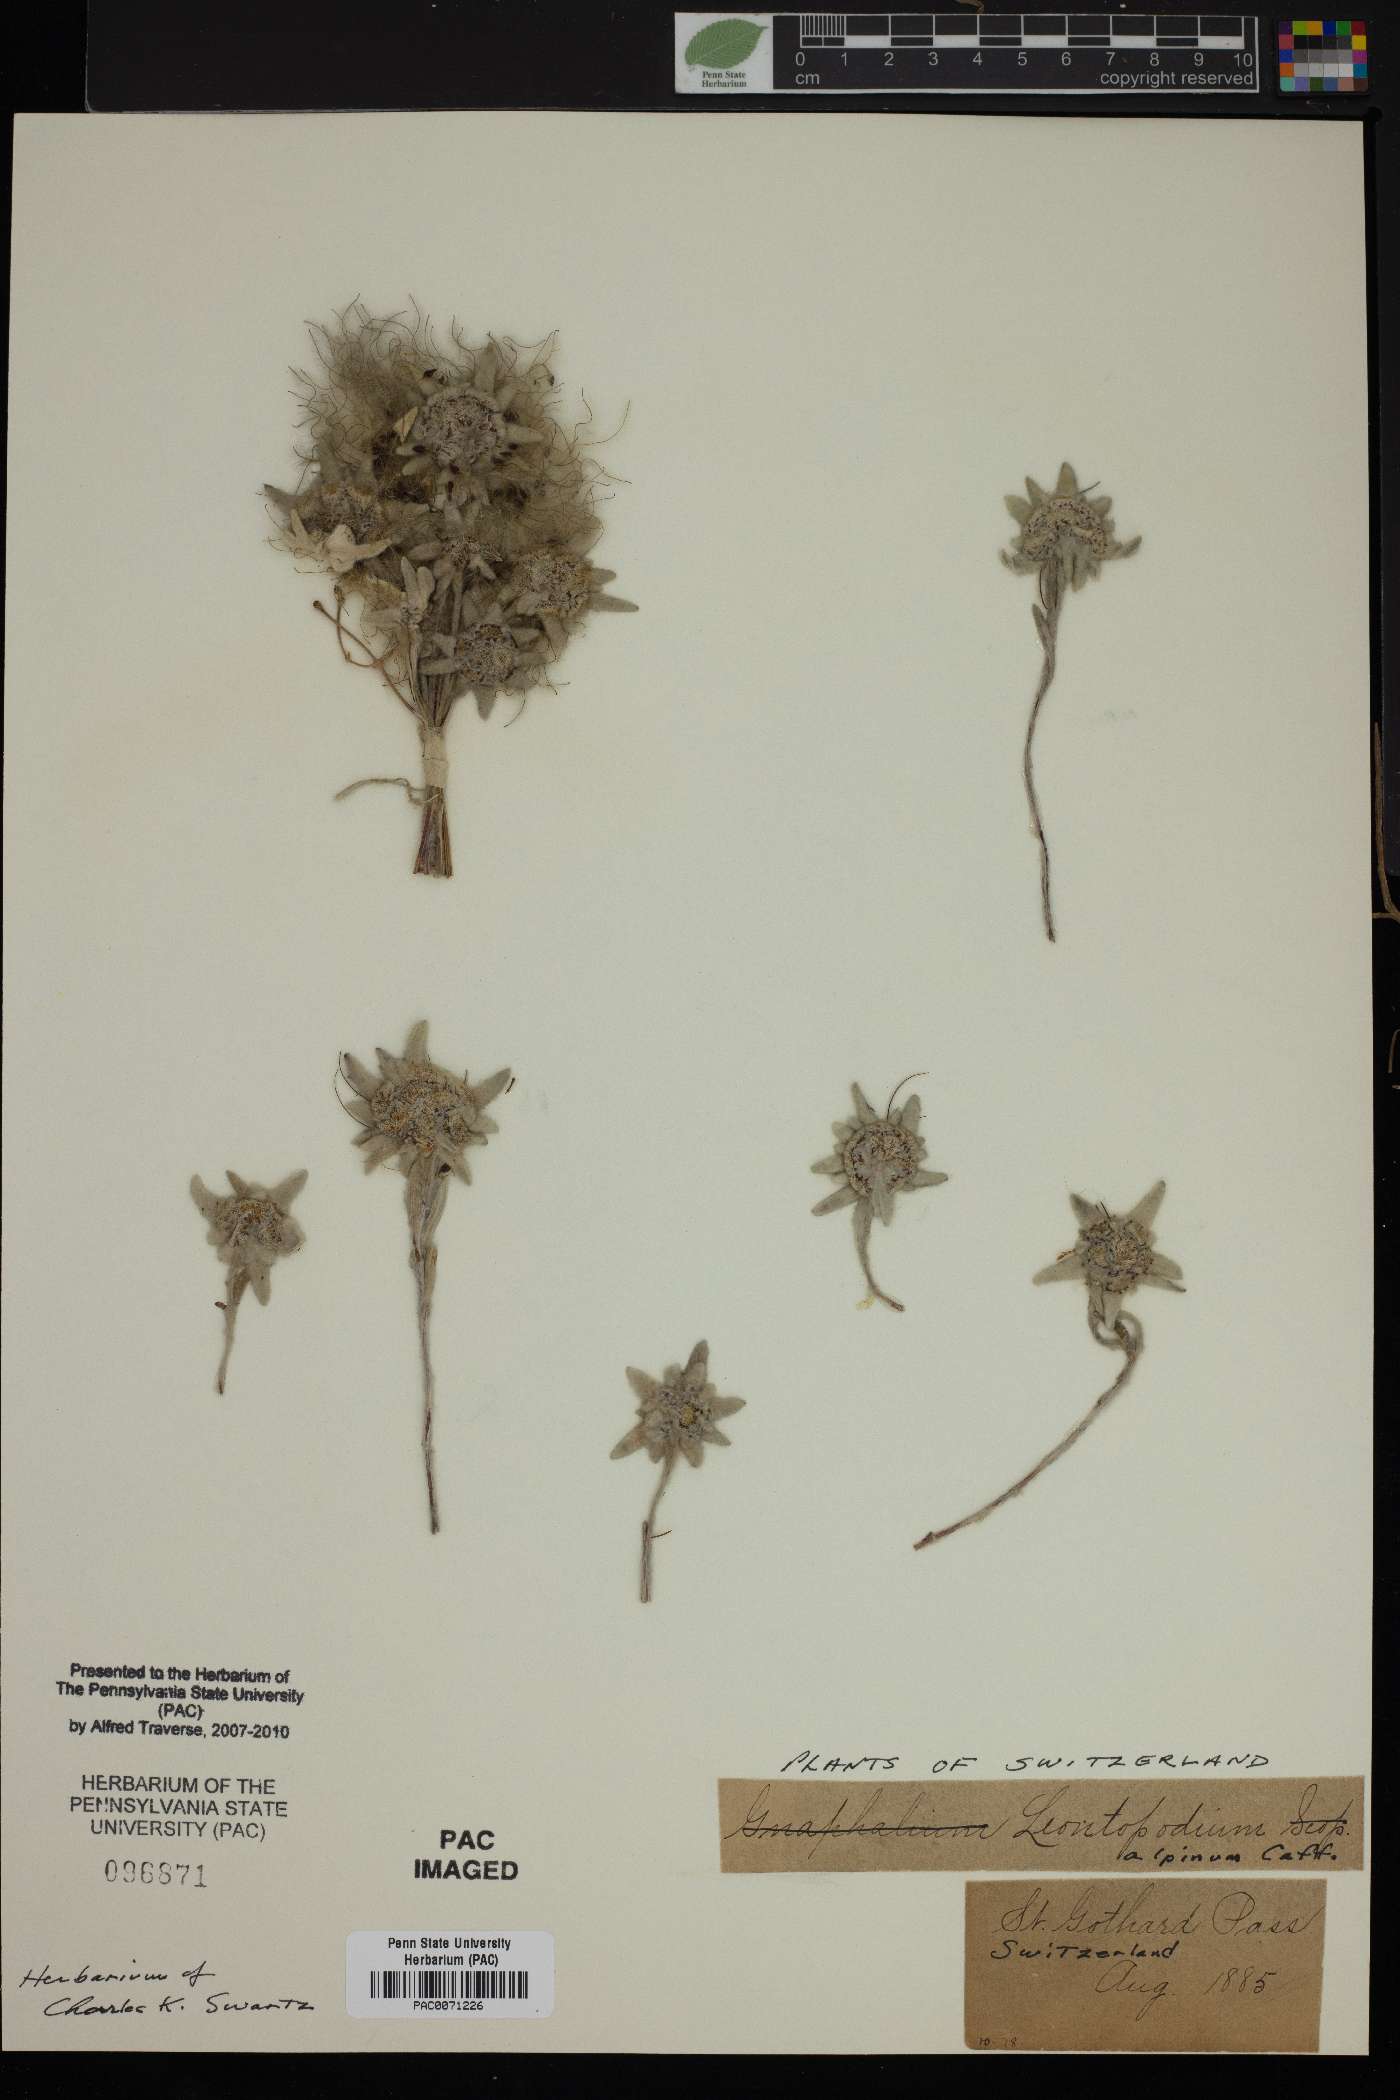 Leontopodium nivale subsp. alpinum image